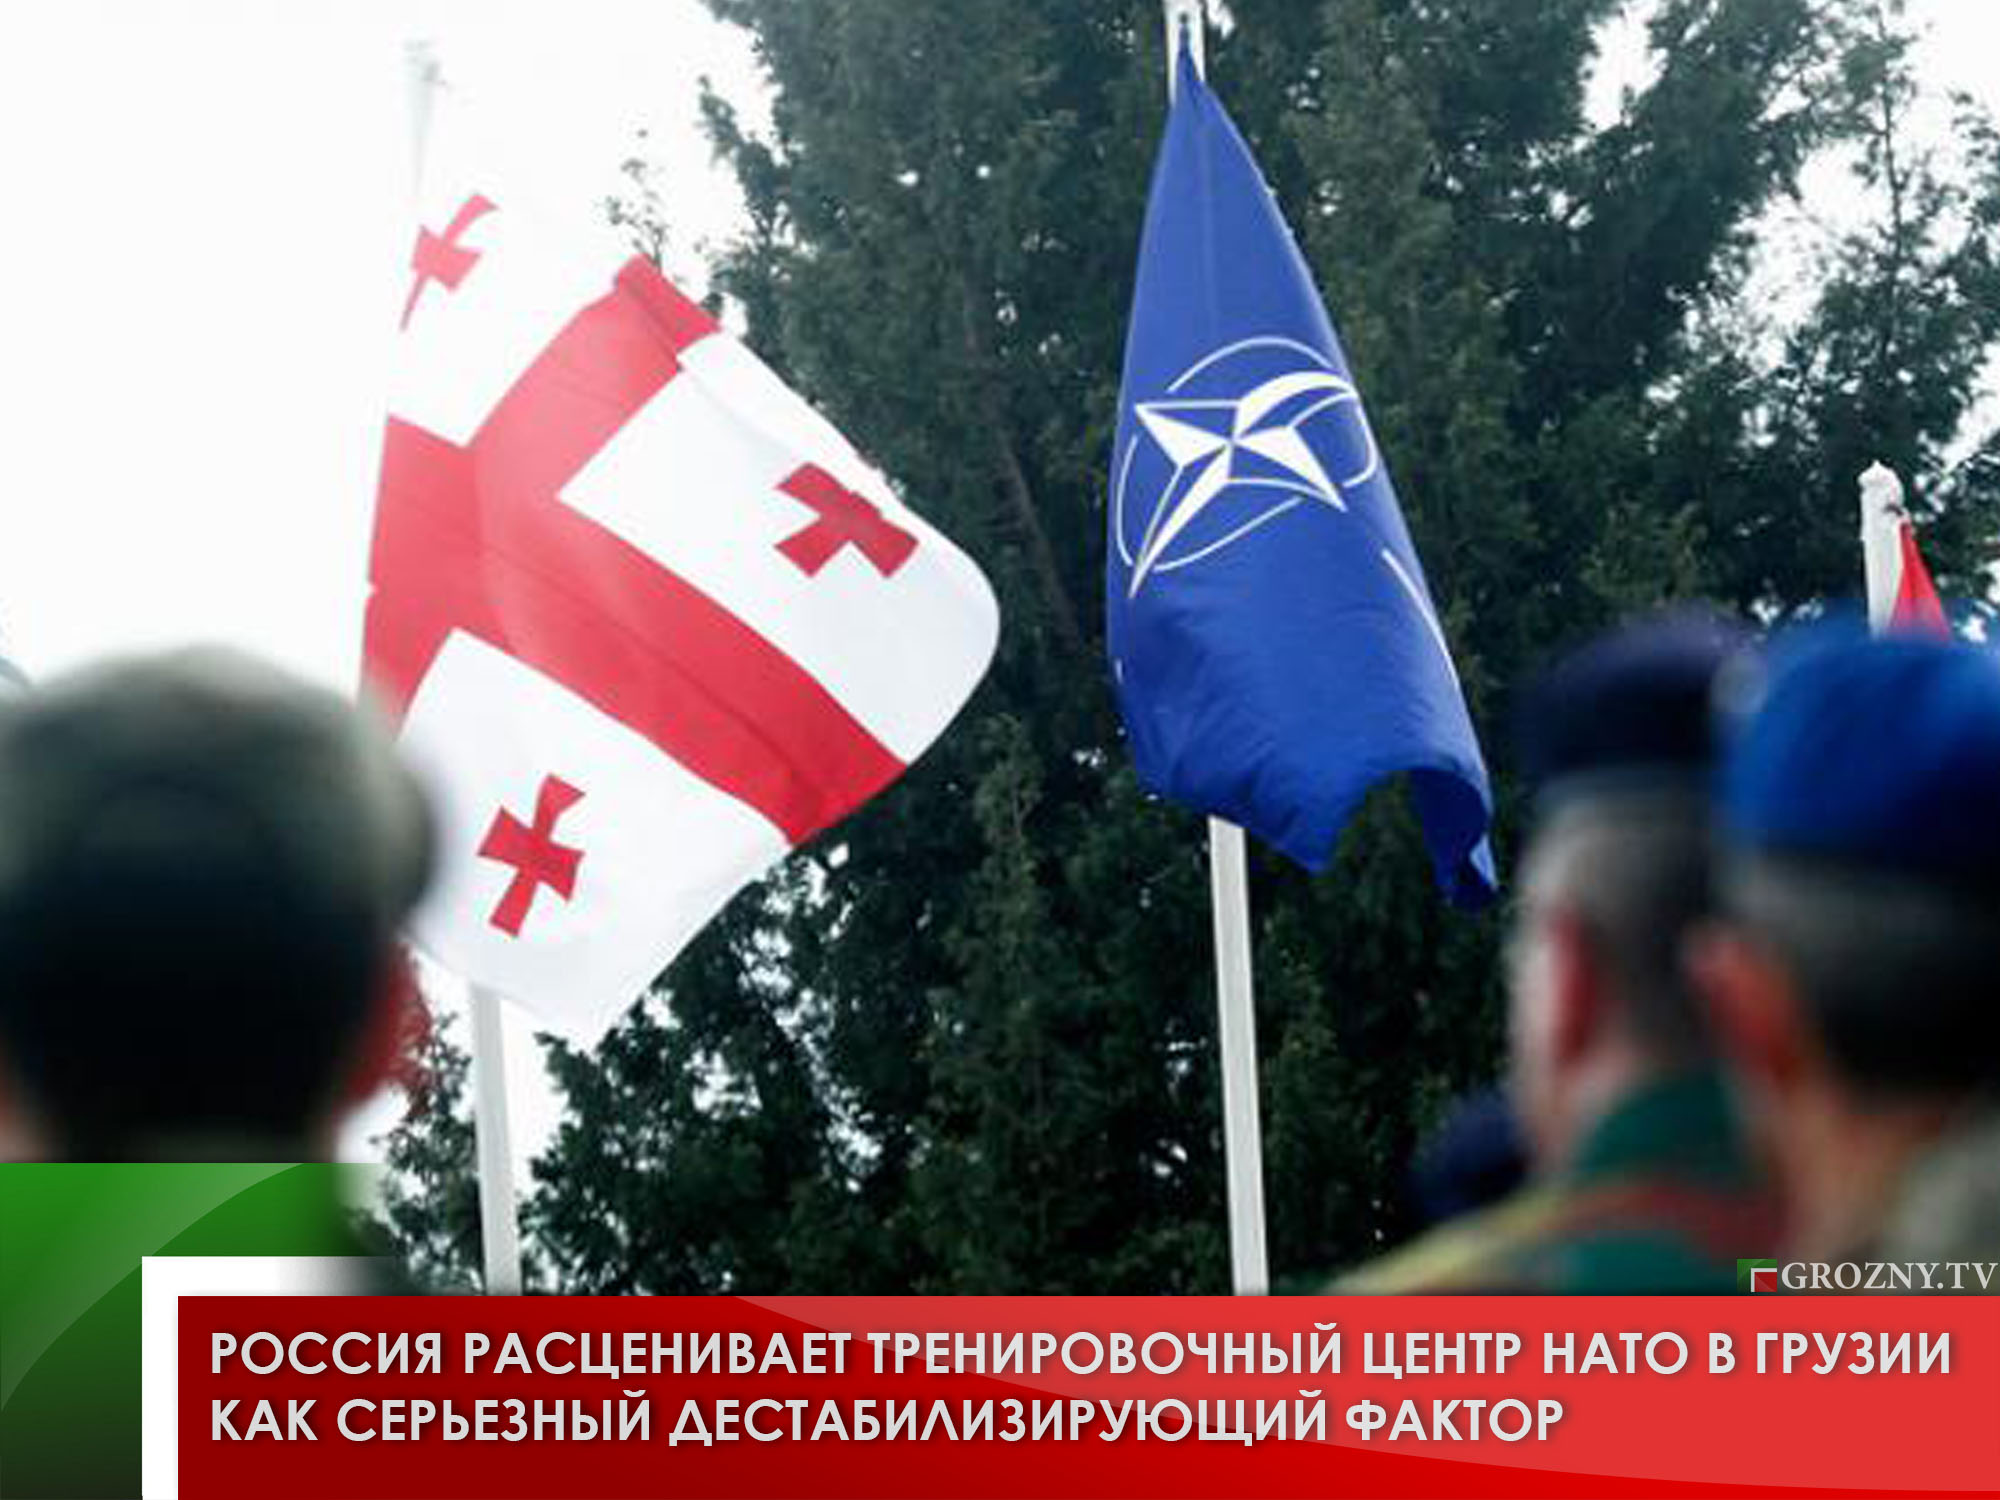 Россия расценивает тренировочный центр НАТО в Грузии как серьезный дестабилизирующий фактор